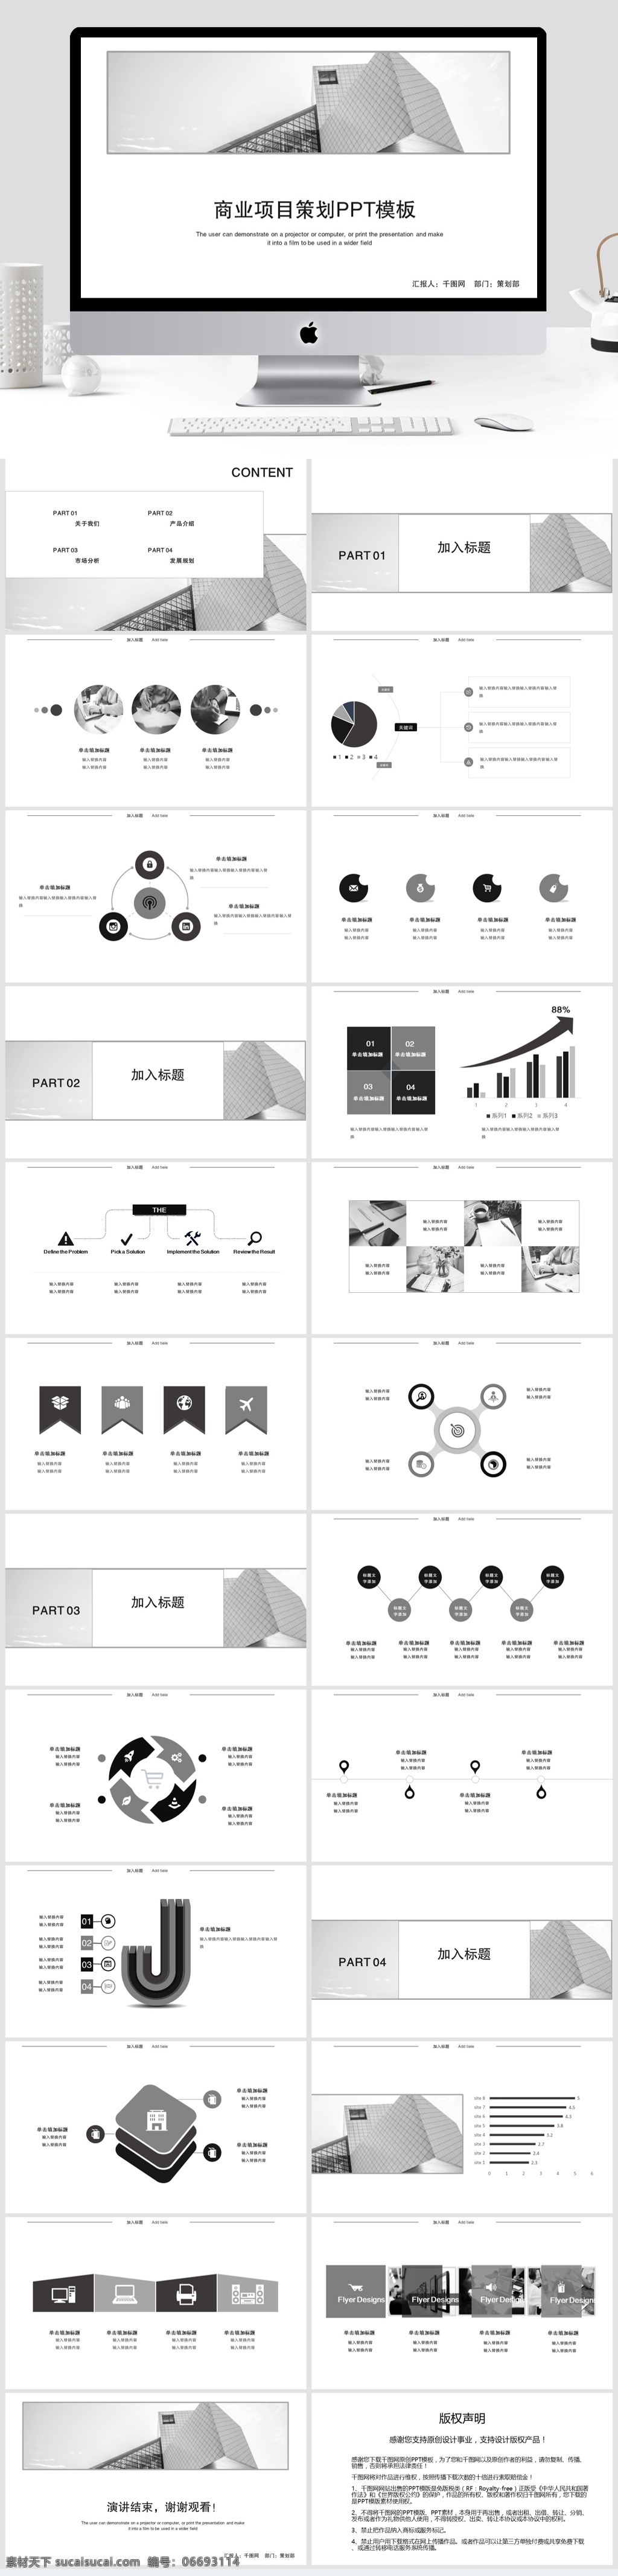 商业 项目策划 方案 黑白风格 通用 欧美风 炫酷